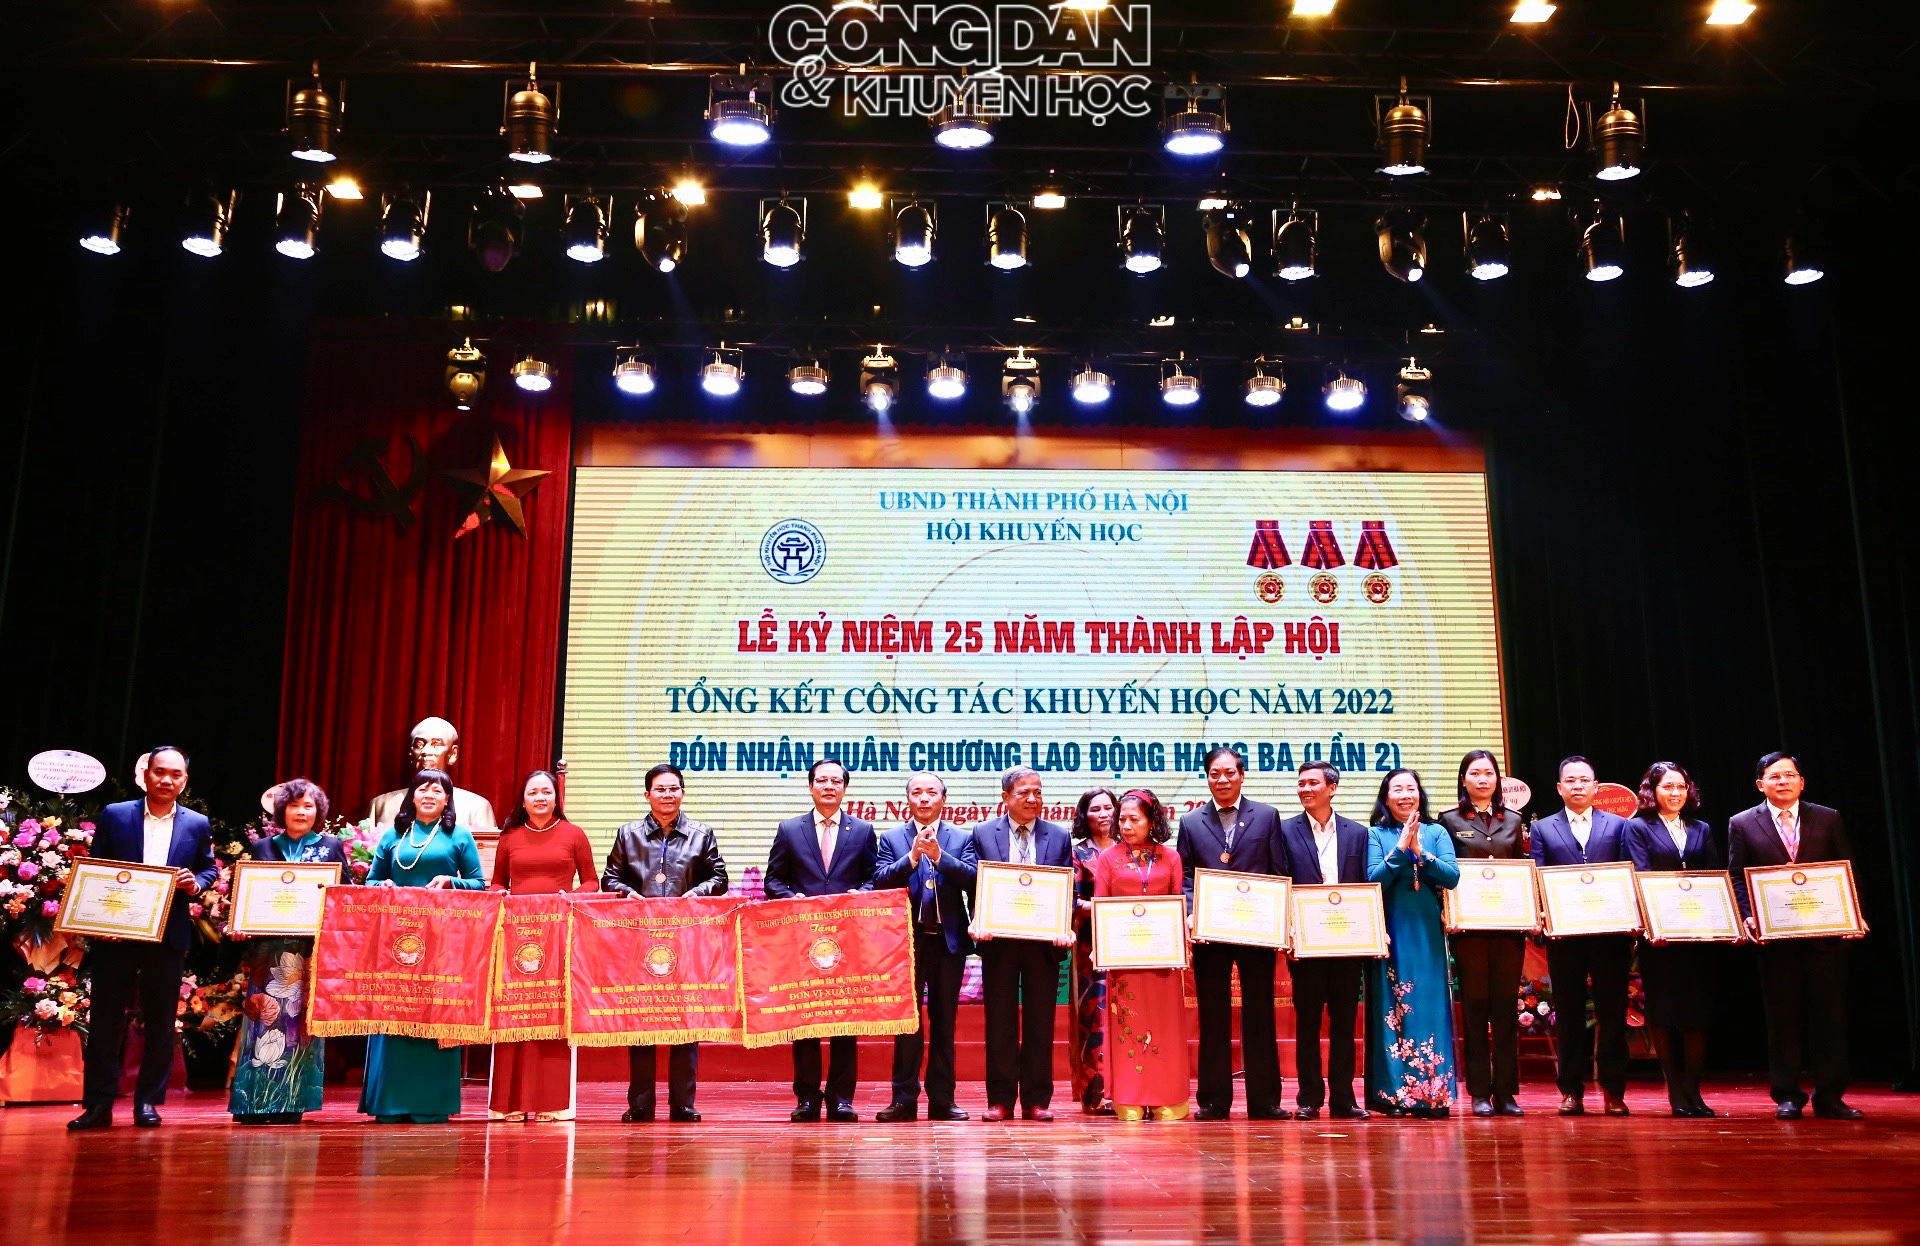 Hội Khuyến học Hà Nội nhận Huân chương Lao động hạng Ba (lần 2) - Ảnh 12.